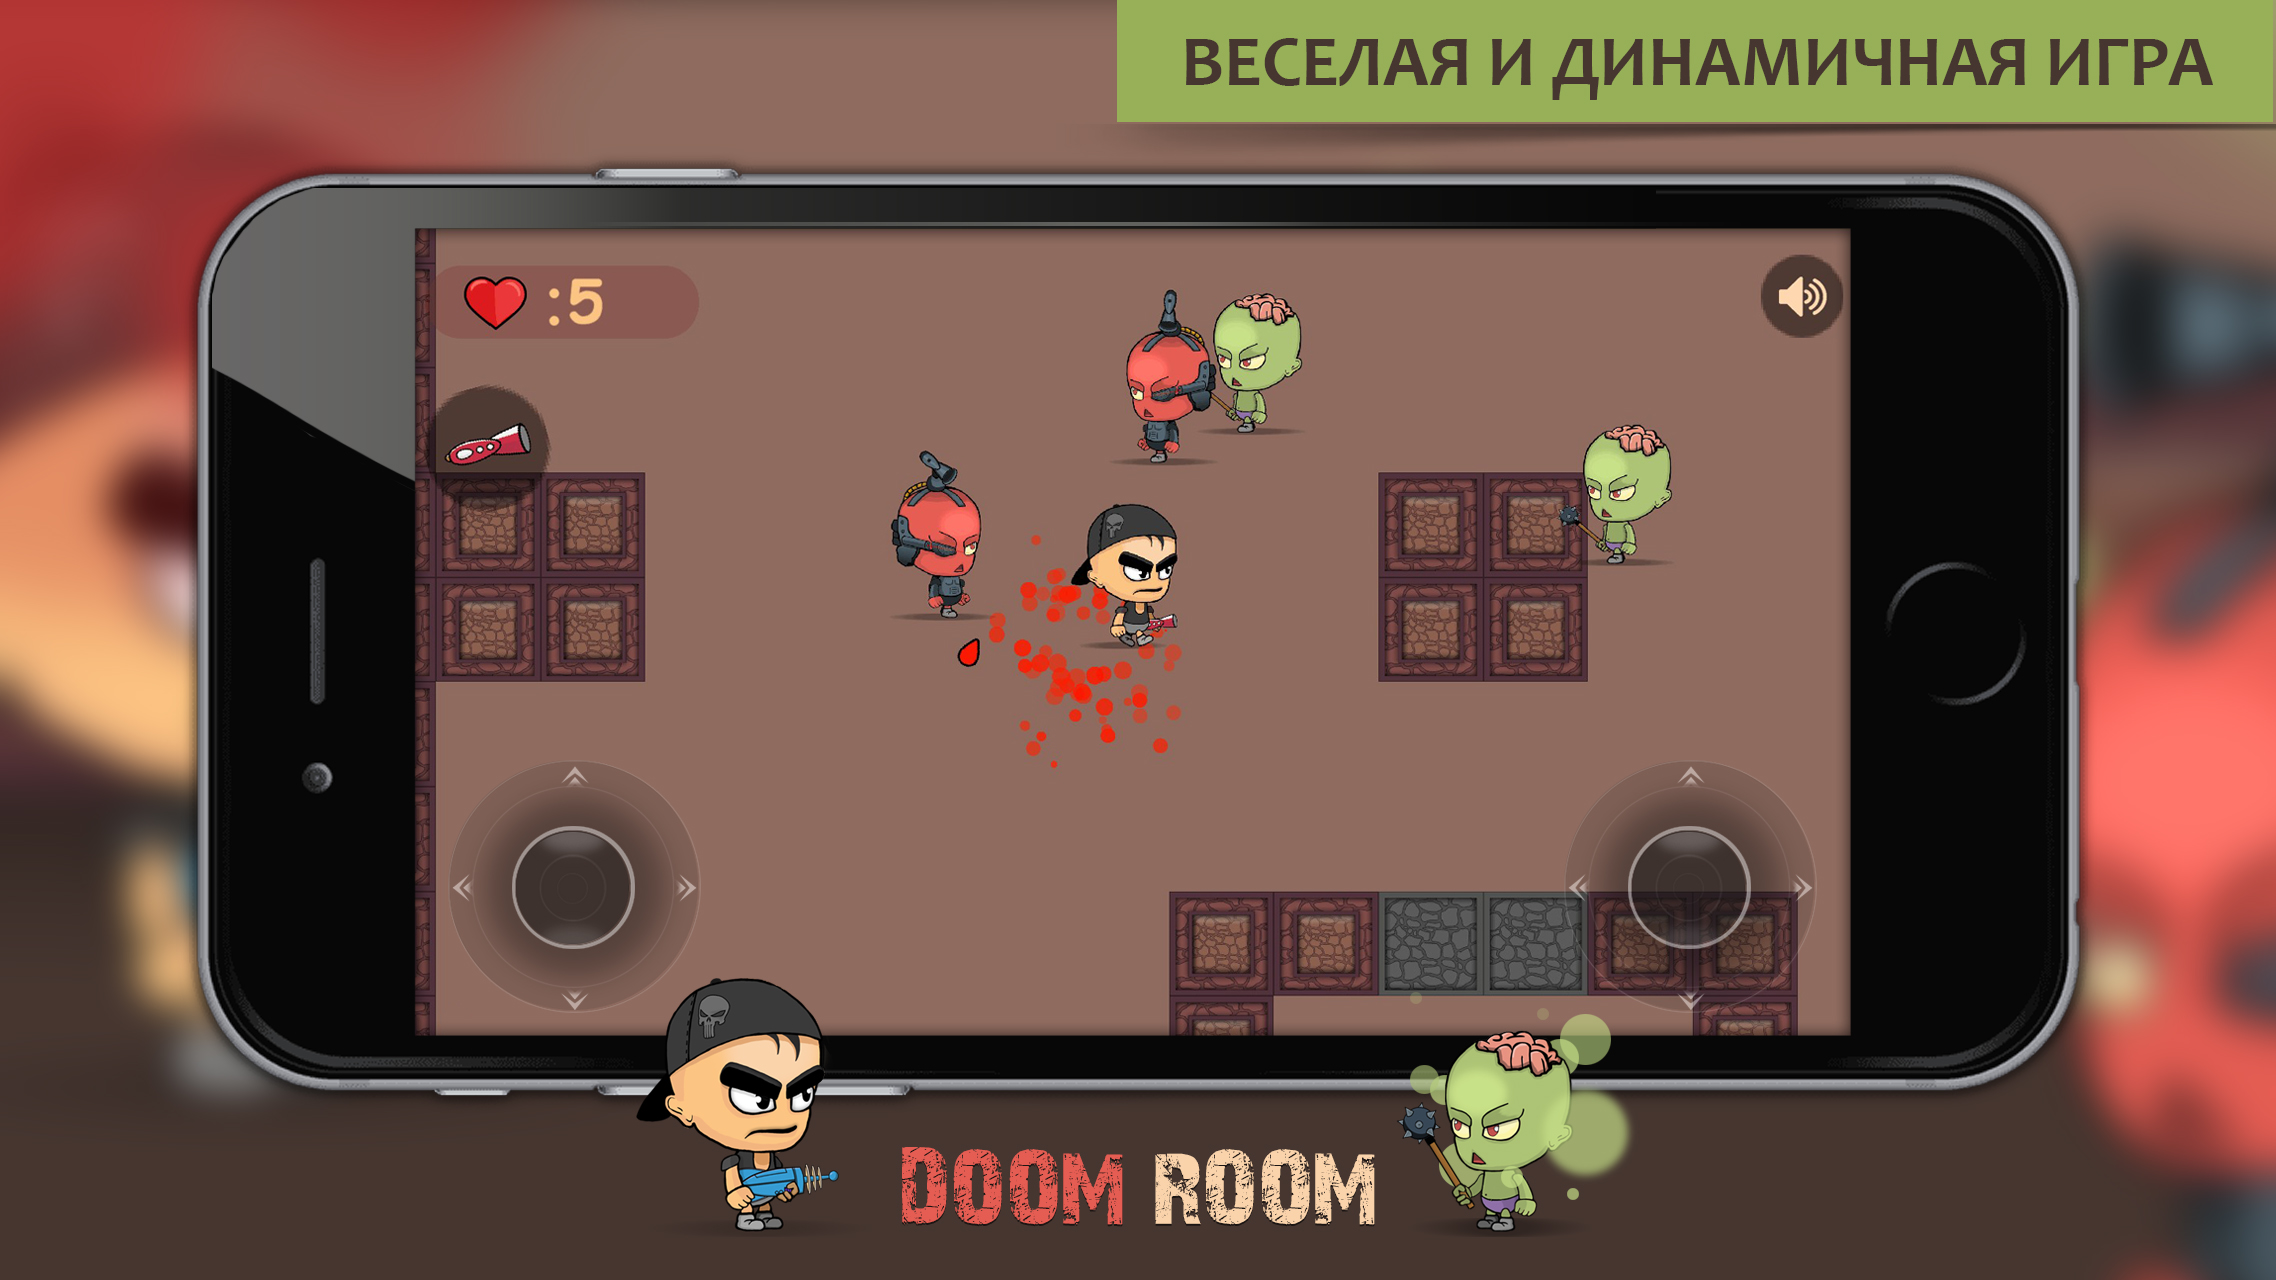 Doom Room - Лабиринт – Скачать Приложение Для Android – Каталог.